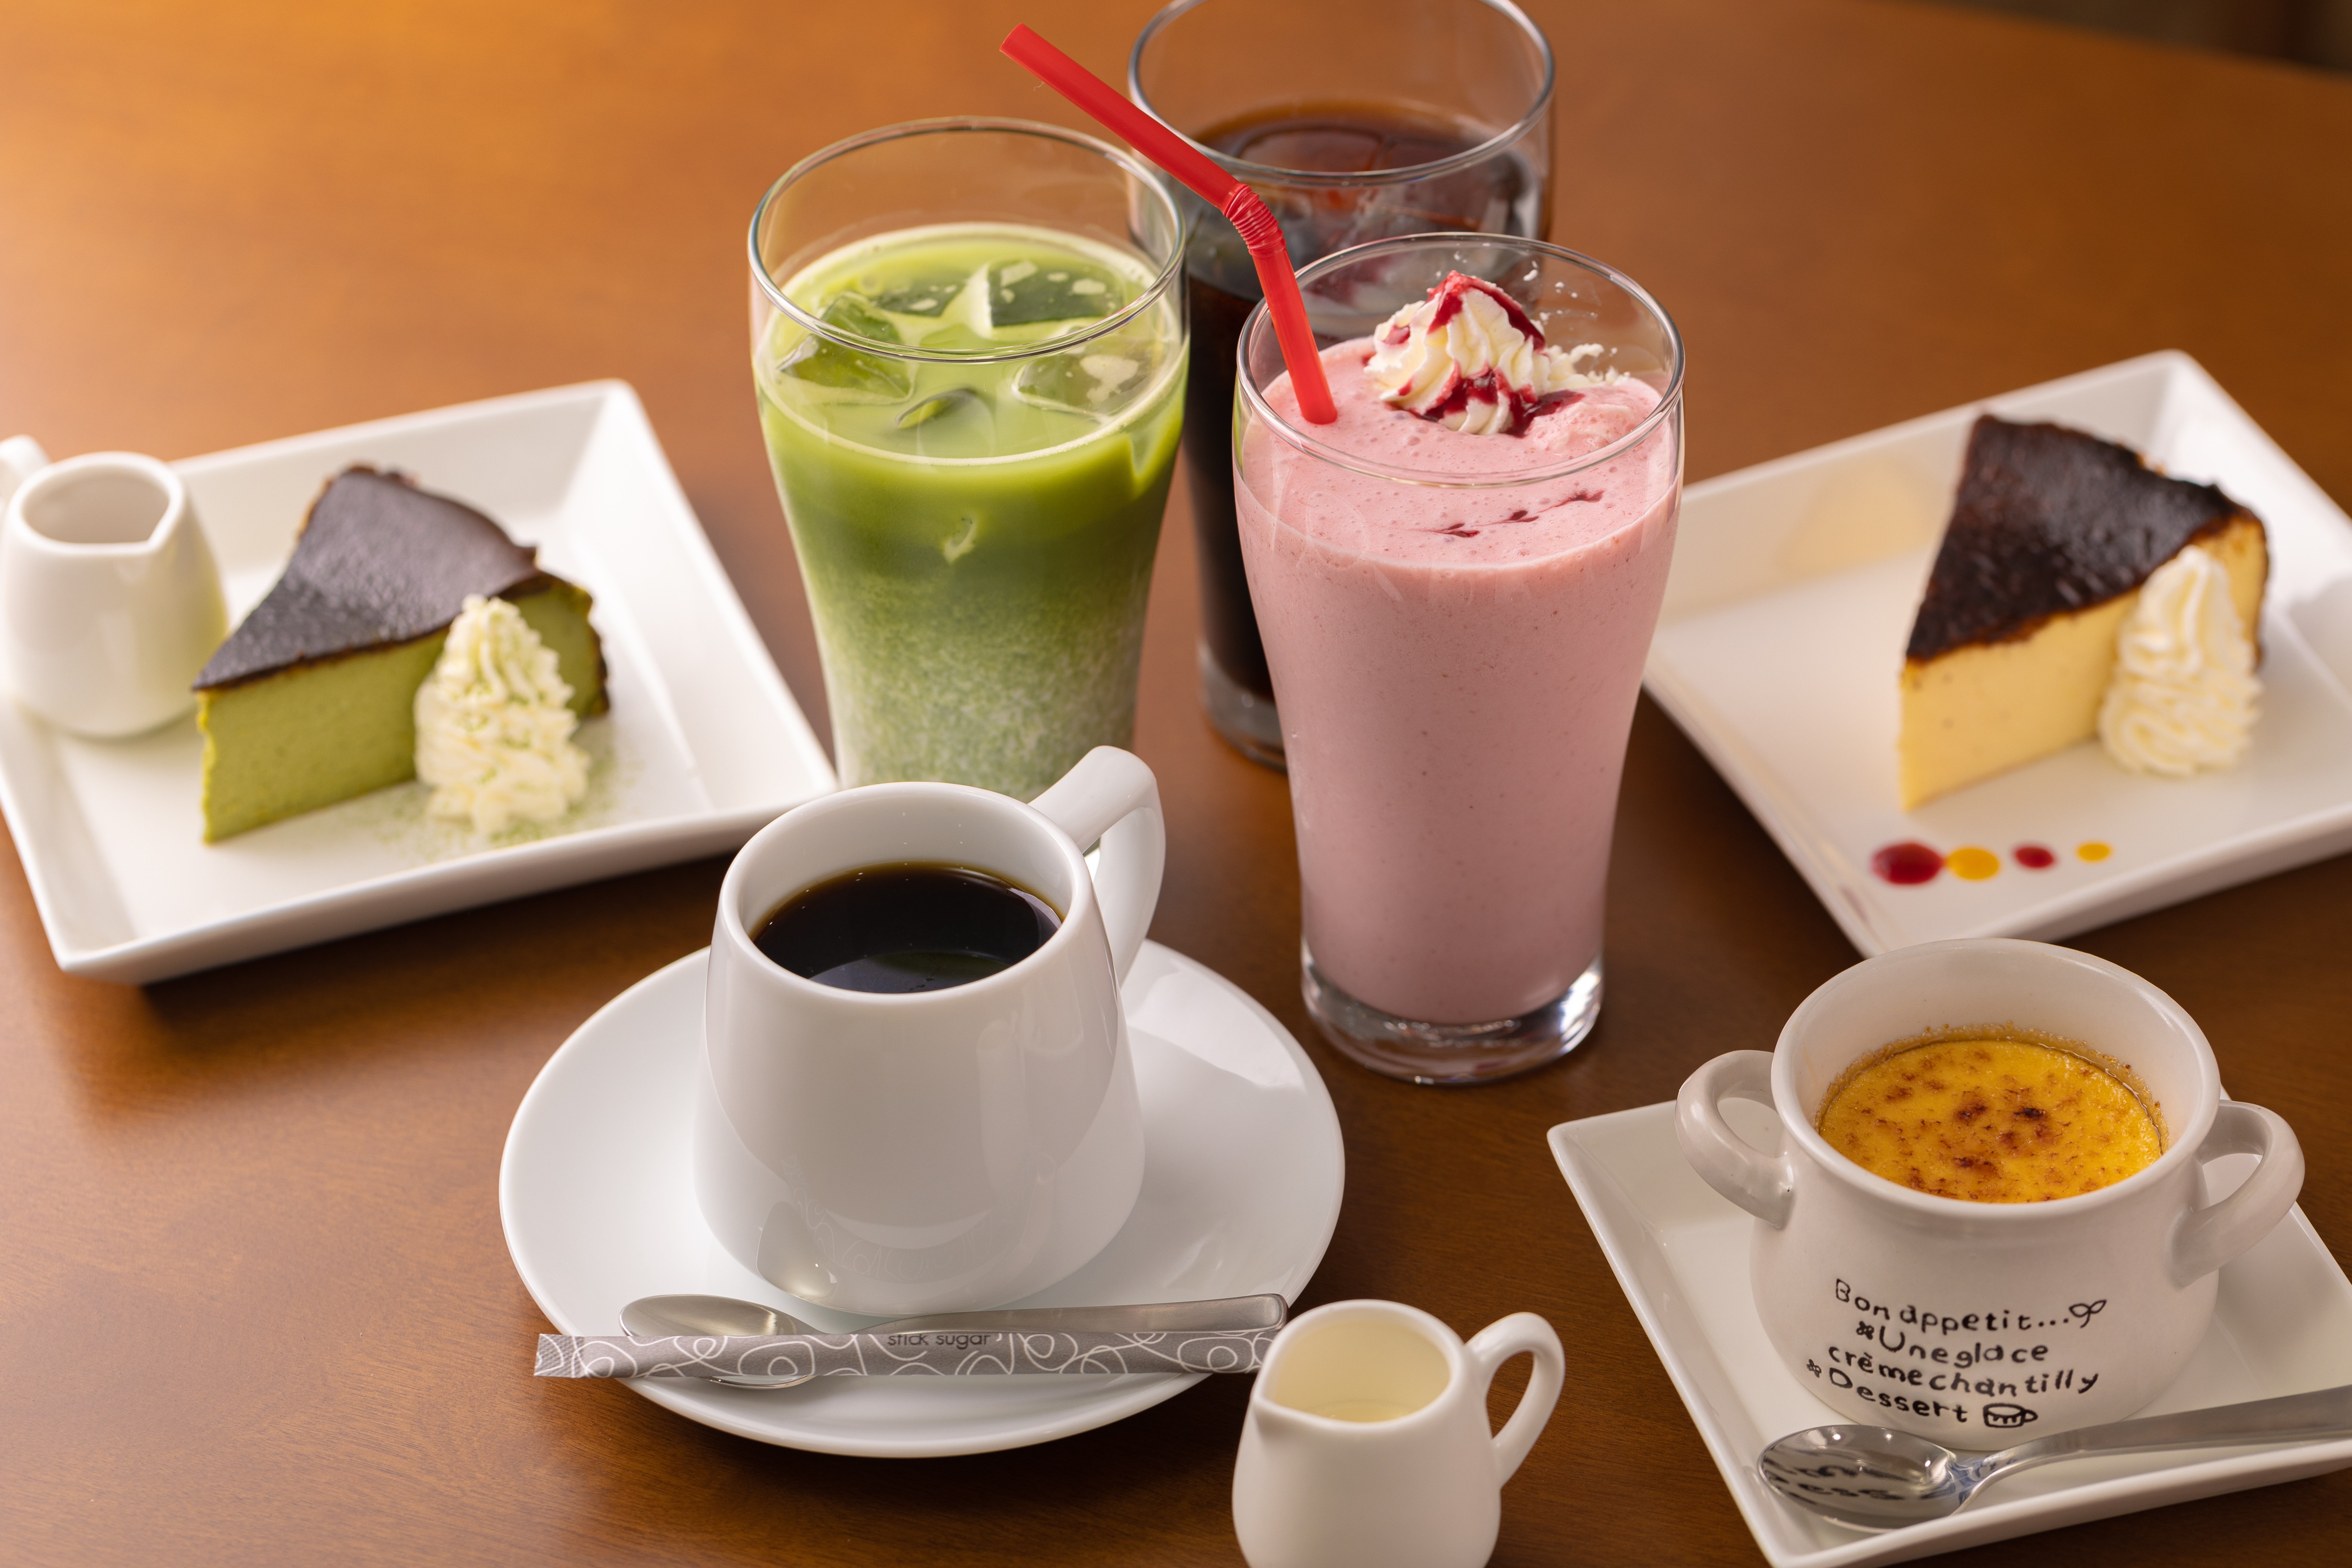 丸亀市・飯山町の「Cafe Creare（カフェ クレアーレ）」さんのクチコミレポート。モーニング、ランチ、カフェ利用におすすめ